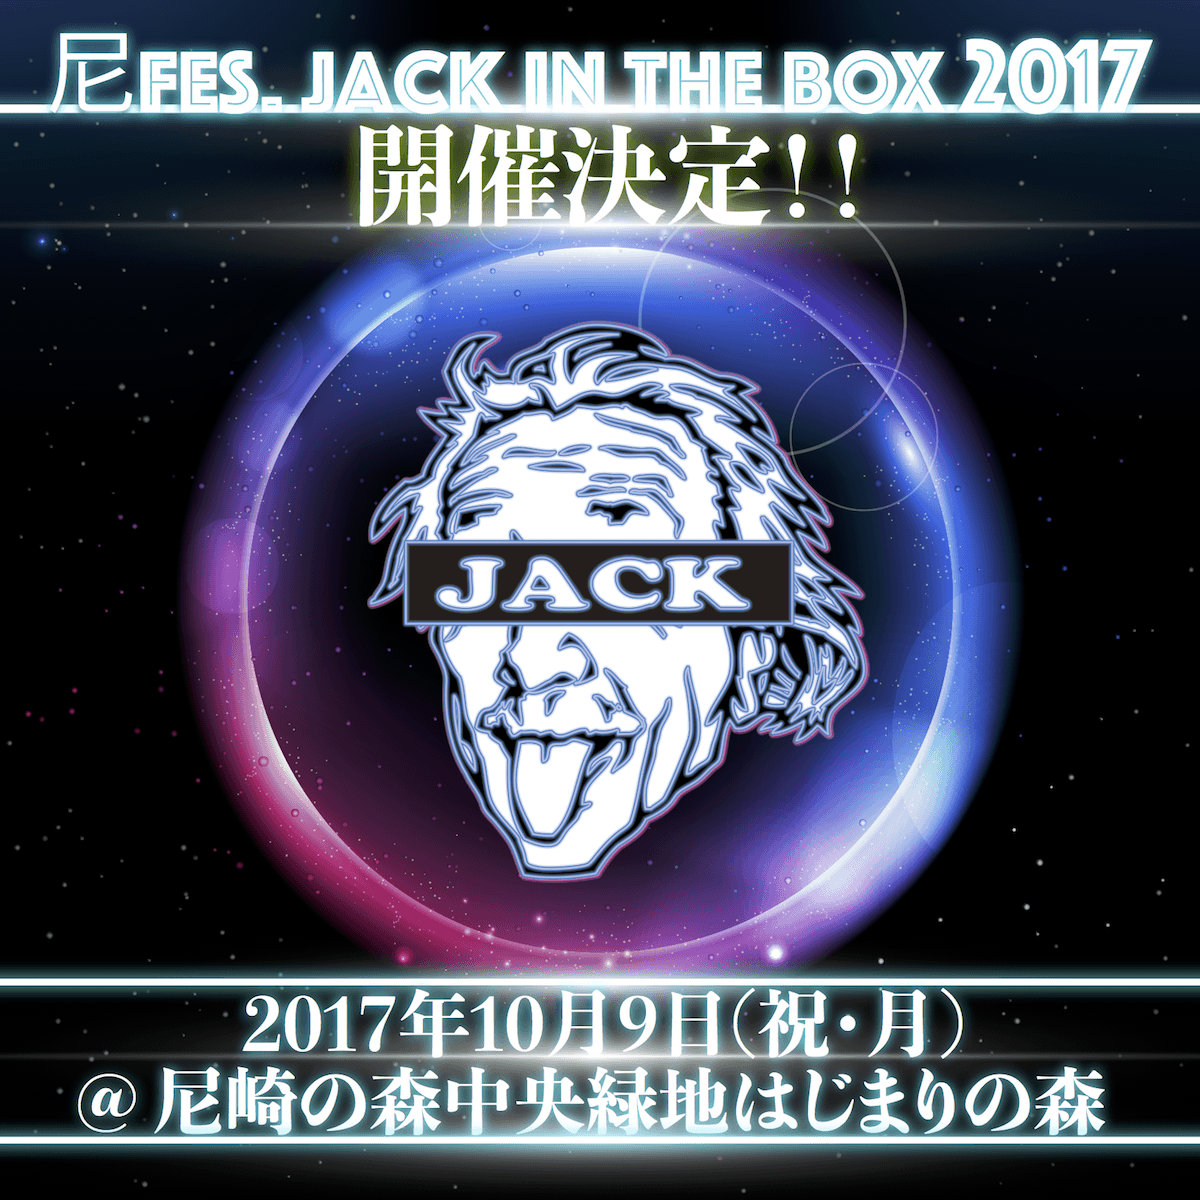 ダンス音楽フェス『尼FES. Jack in the BOX 2017』開催決定!!